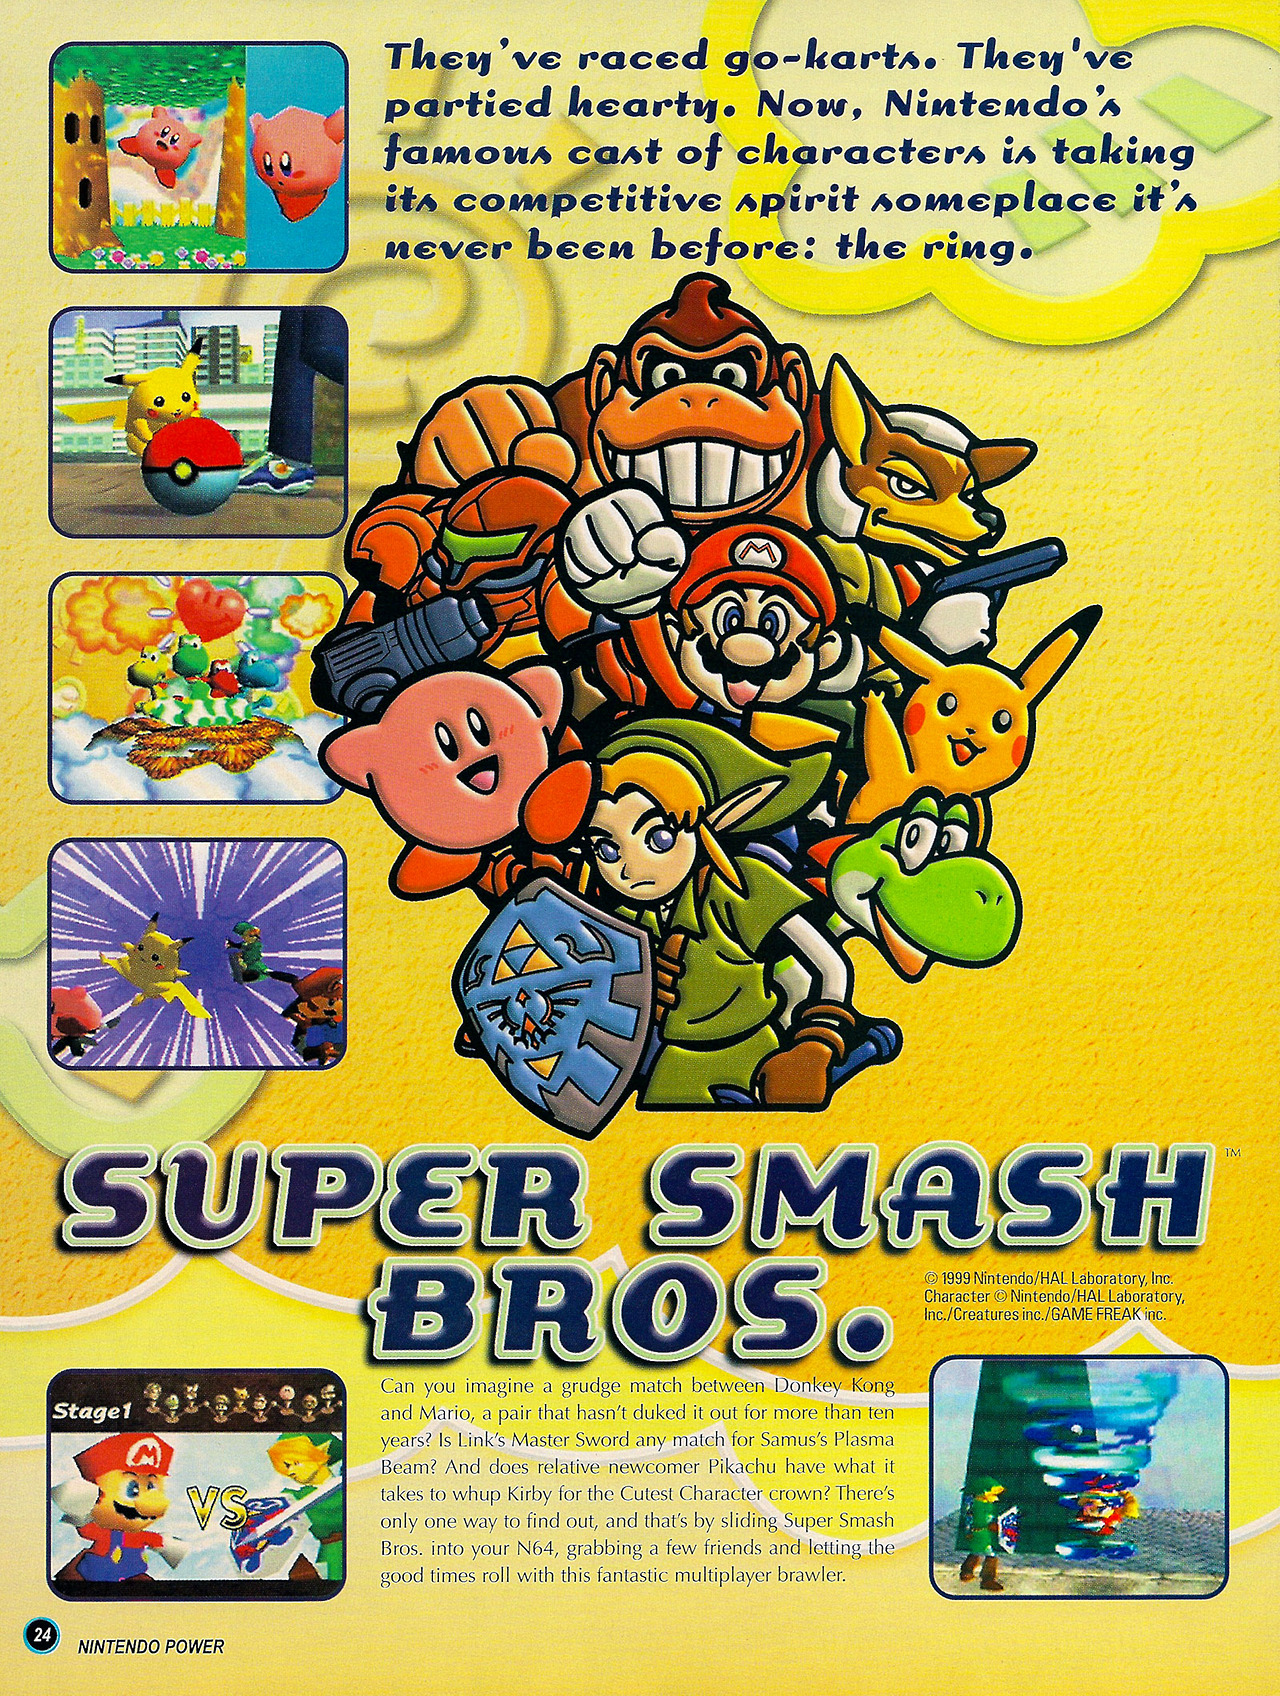 Super Smash Bros. Melee 64 - N64 Squid